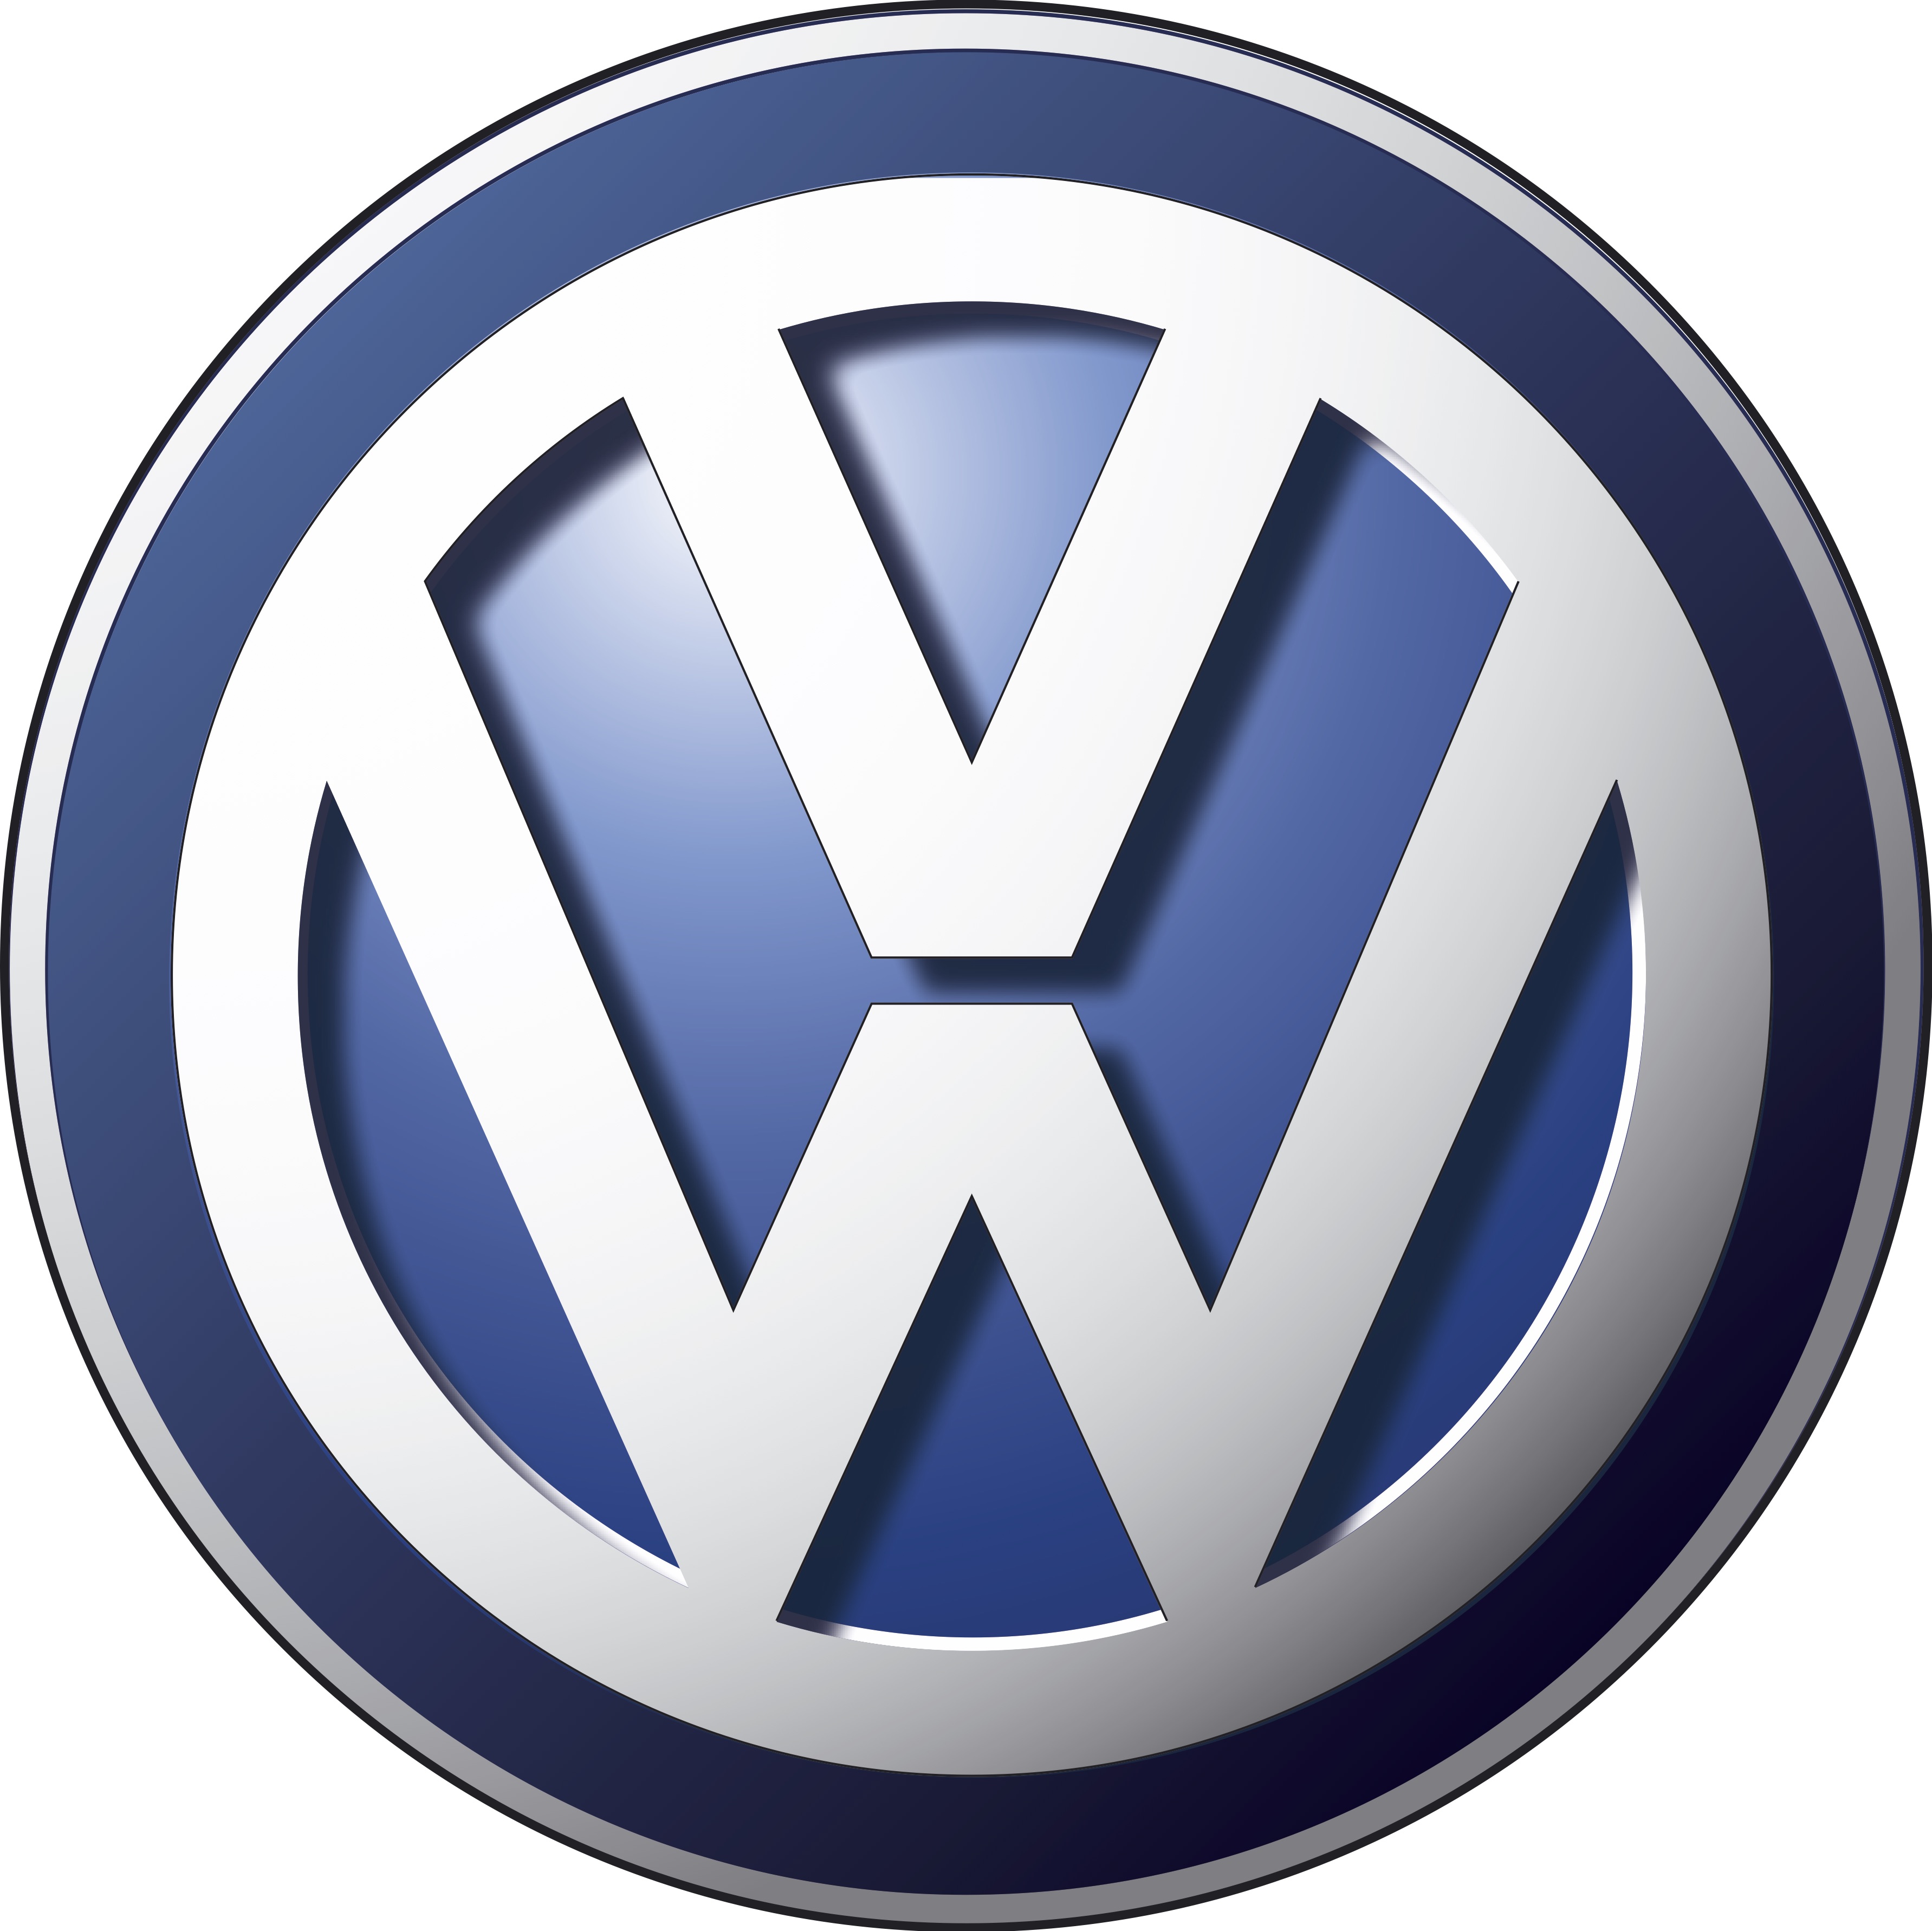 El nombre y logo Volkswagen provienen del alemán, que significa el automóvil del pueblo, puesto el escarabajo está diseñado para ser barato y eficiente.